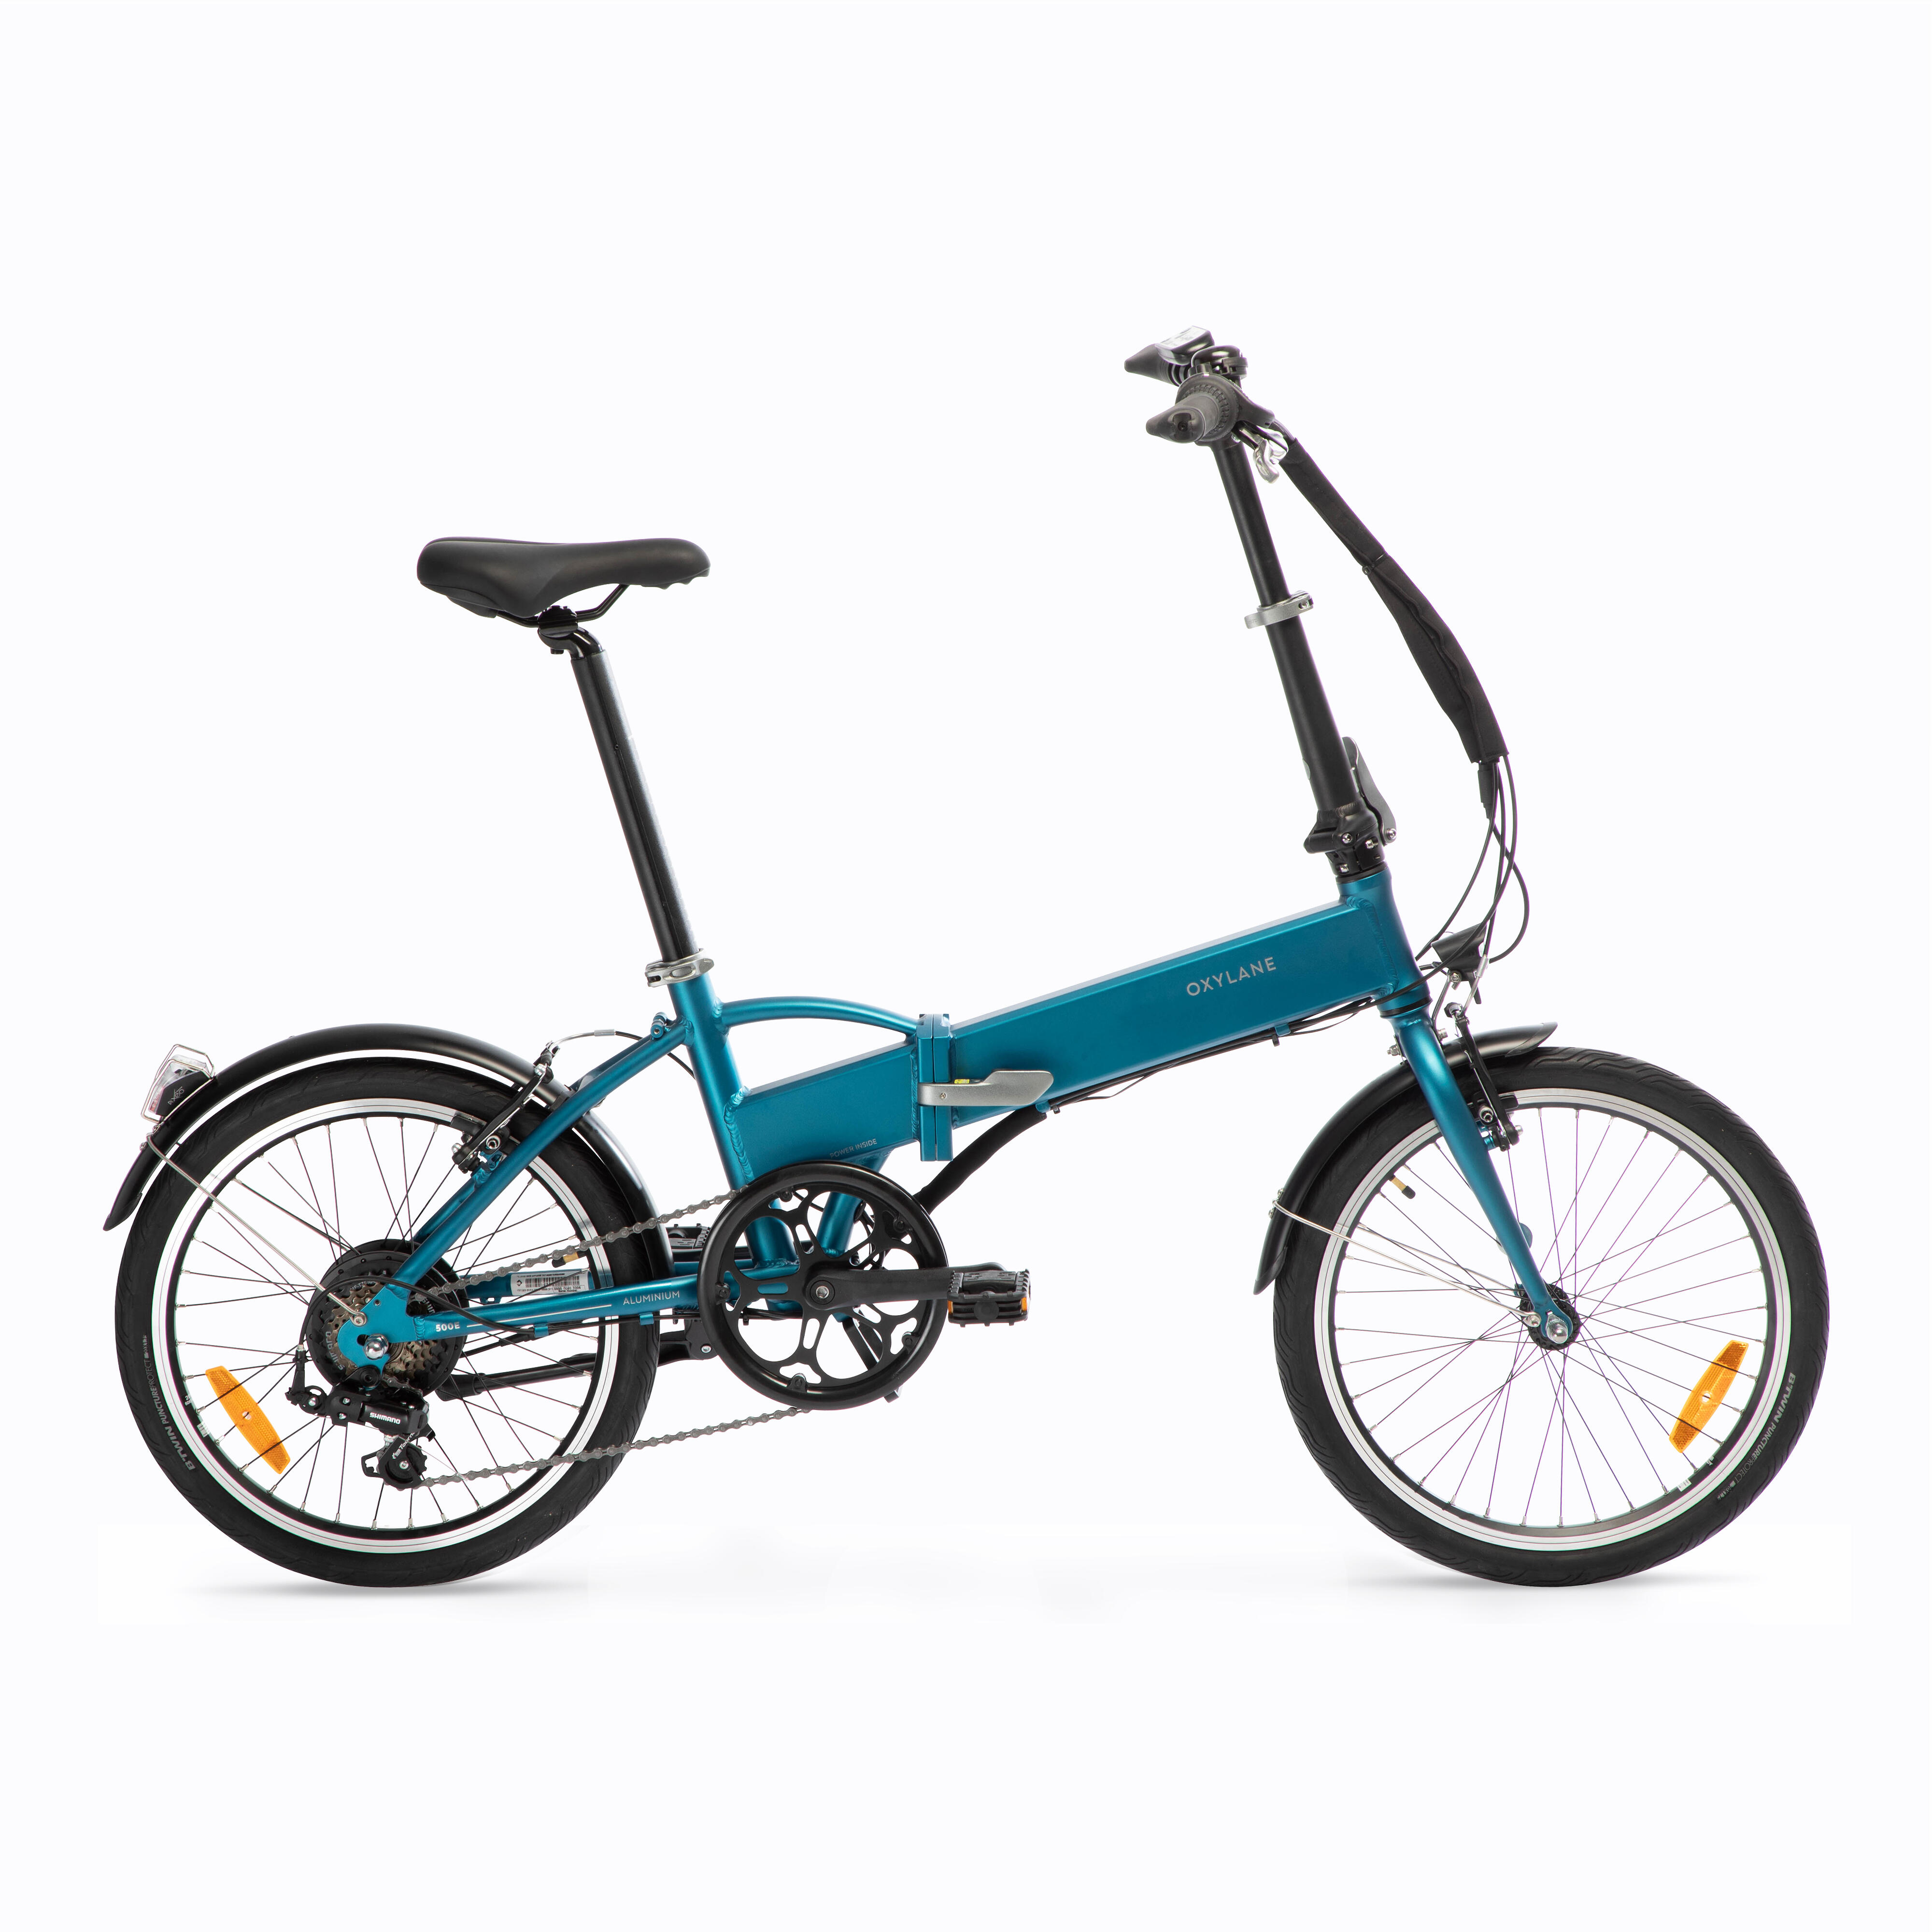 Bicicletă pliabilă cu asistență electrică TILT 500 E Albastru decathlon.ro Biciclete